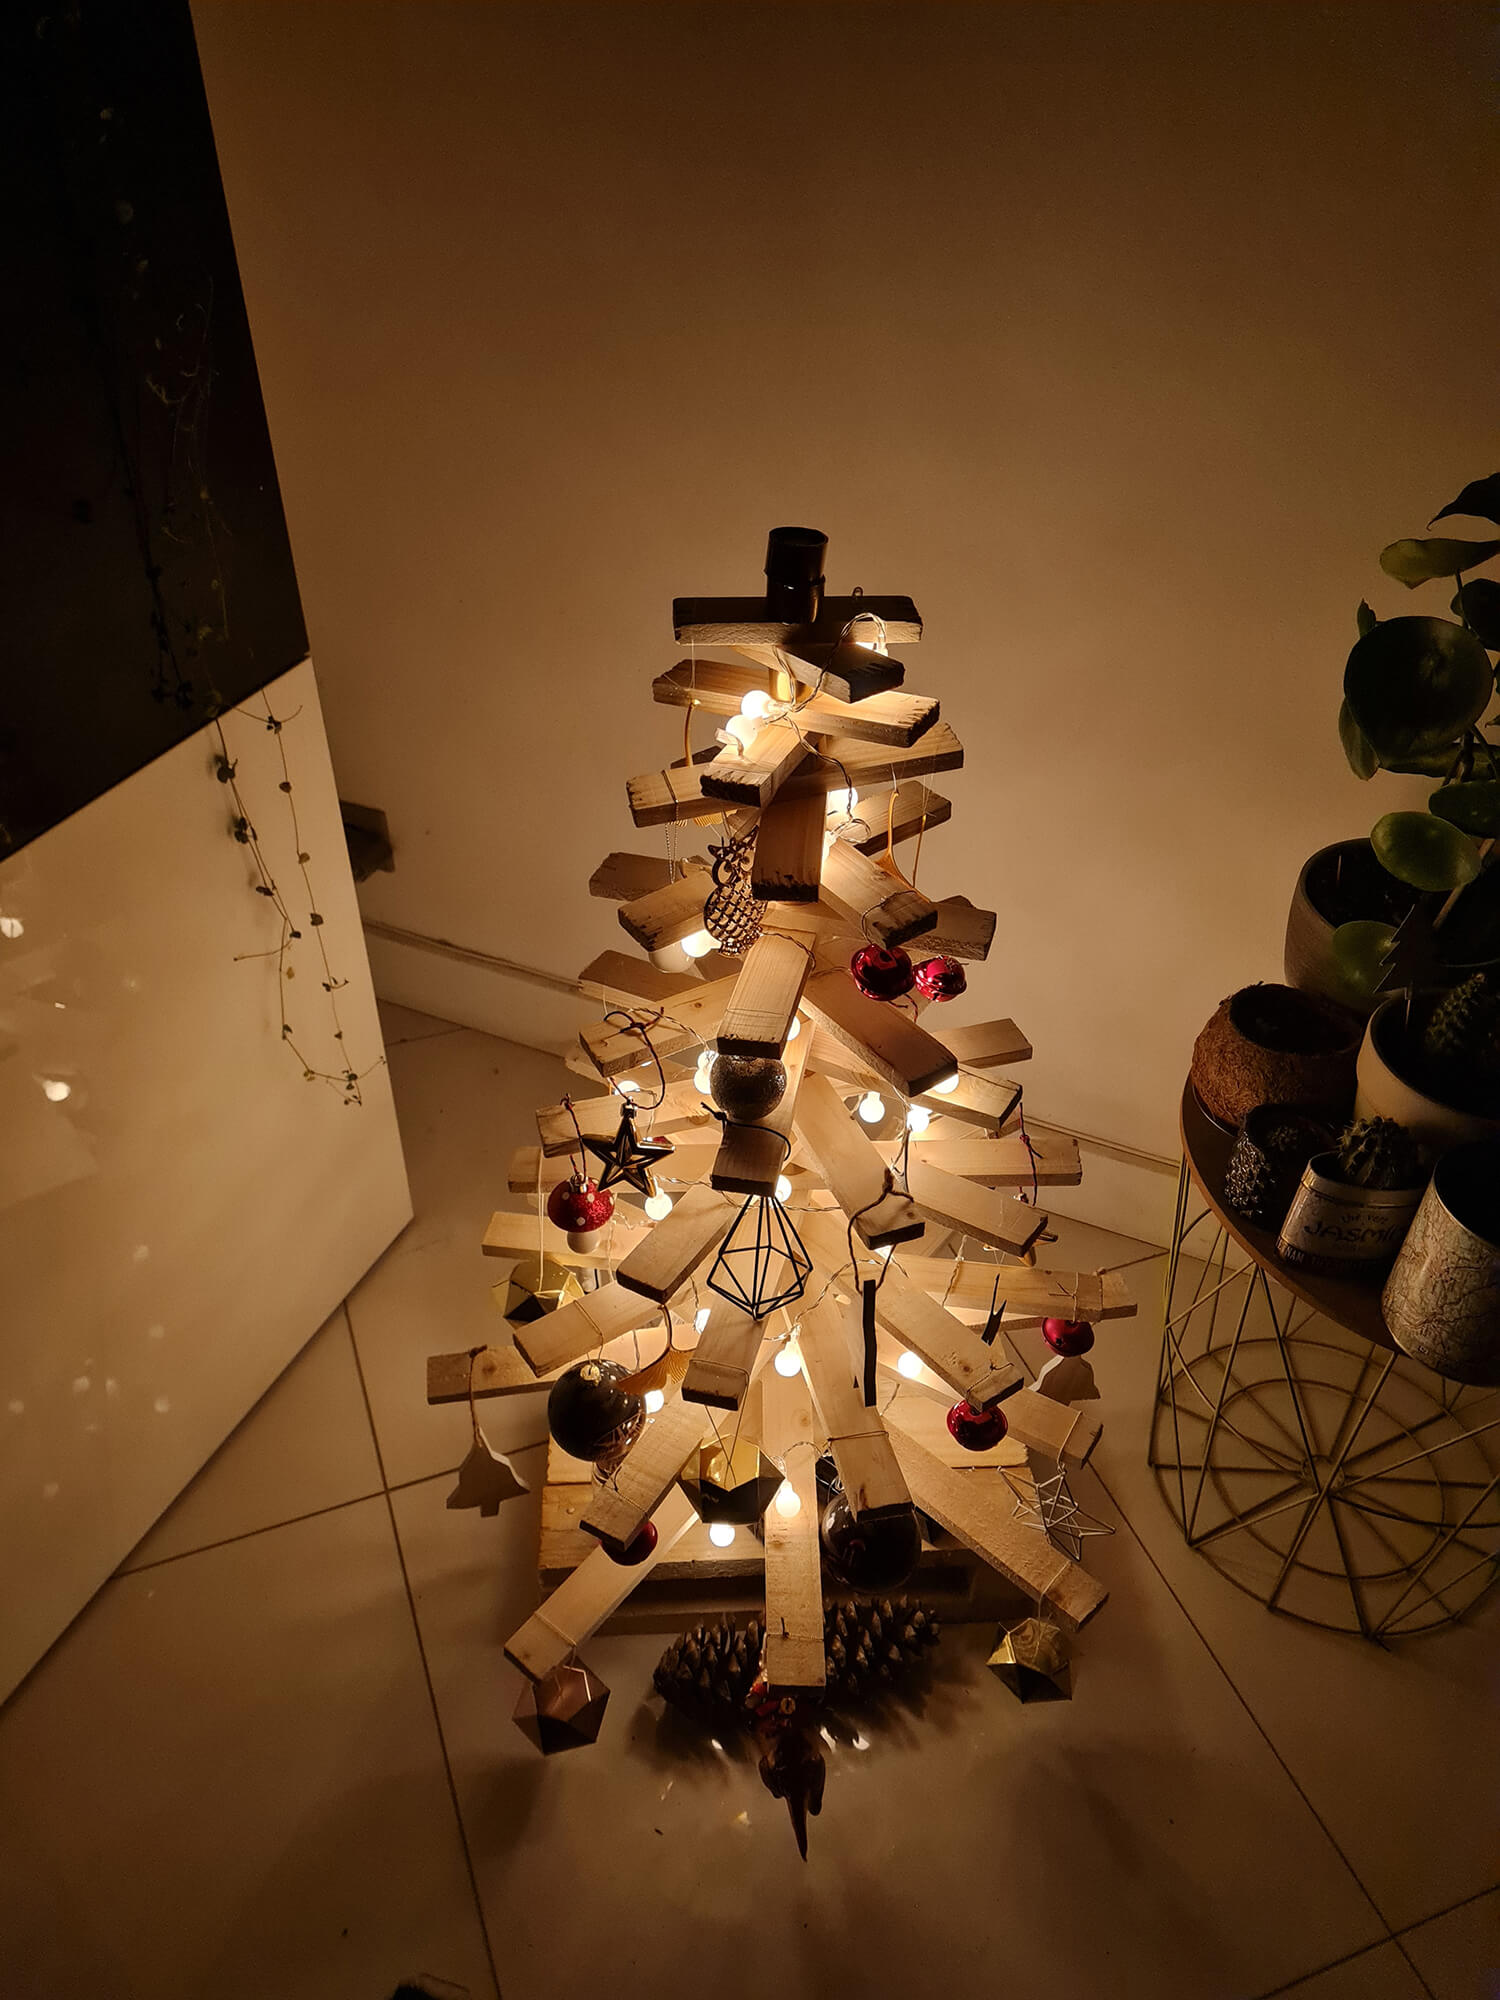 20201209 034056 - DIY récup : fabriquer un sapin de Noël en bois avec des tasseaux